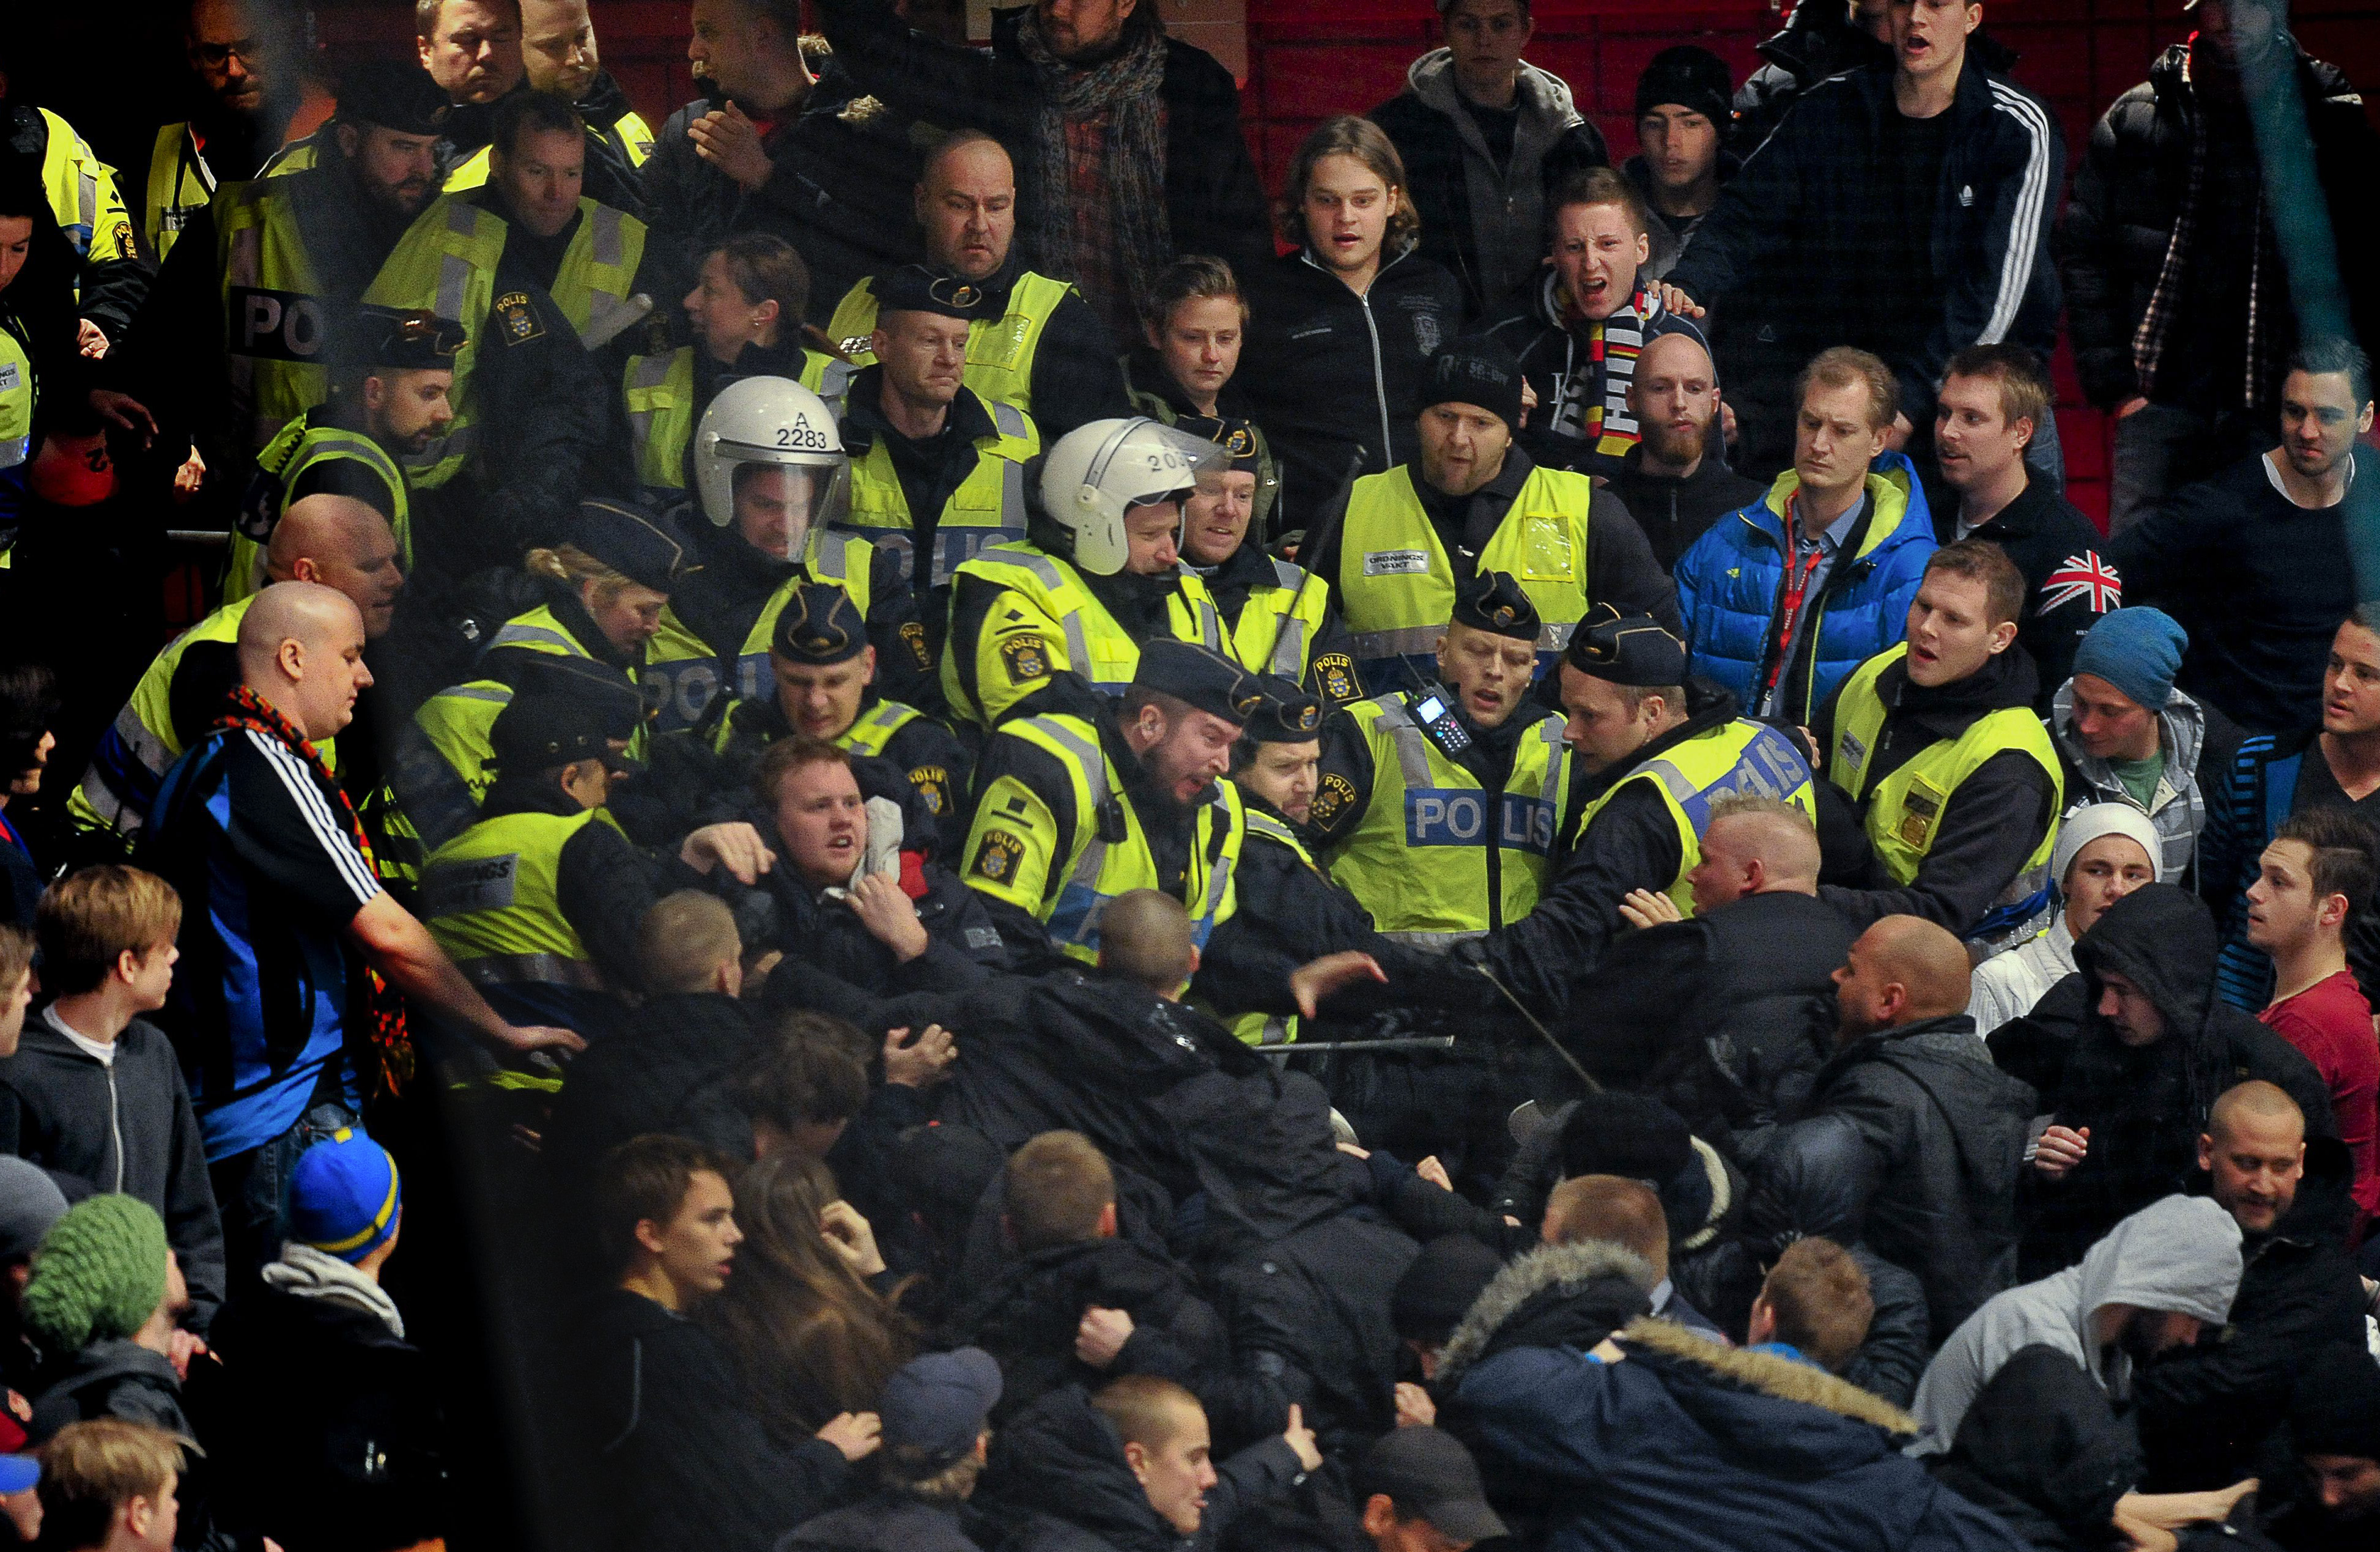 Här går polisen till angrepp mot fansen, menar supportrarna själva.